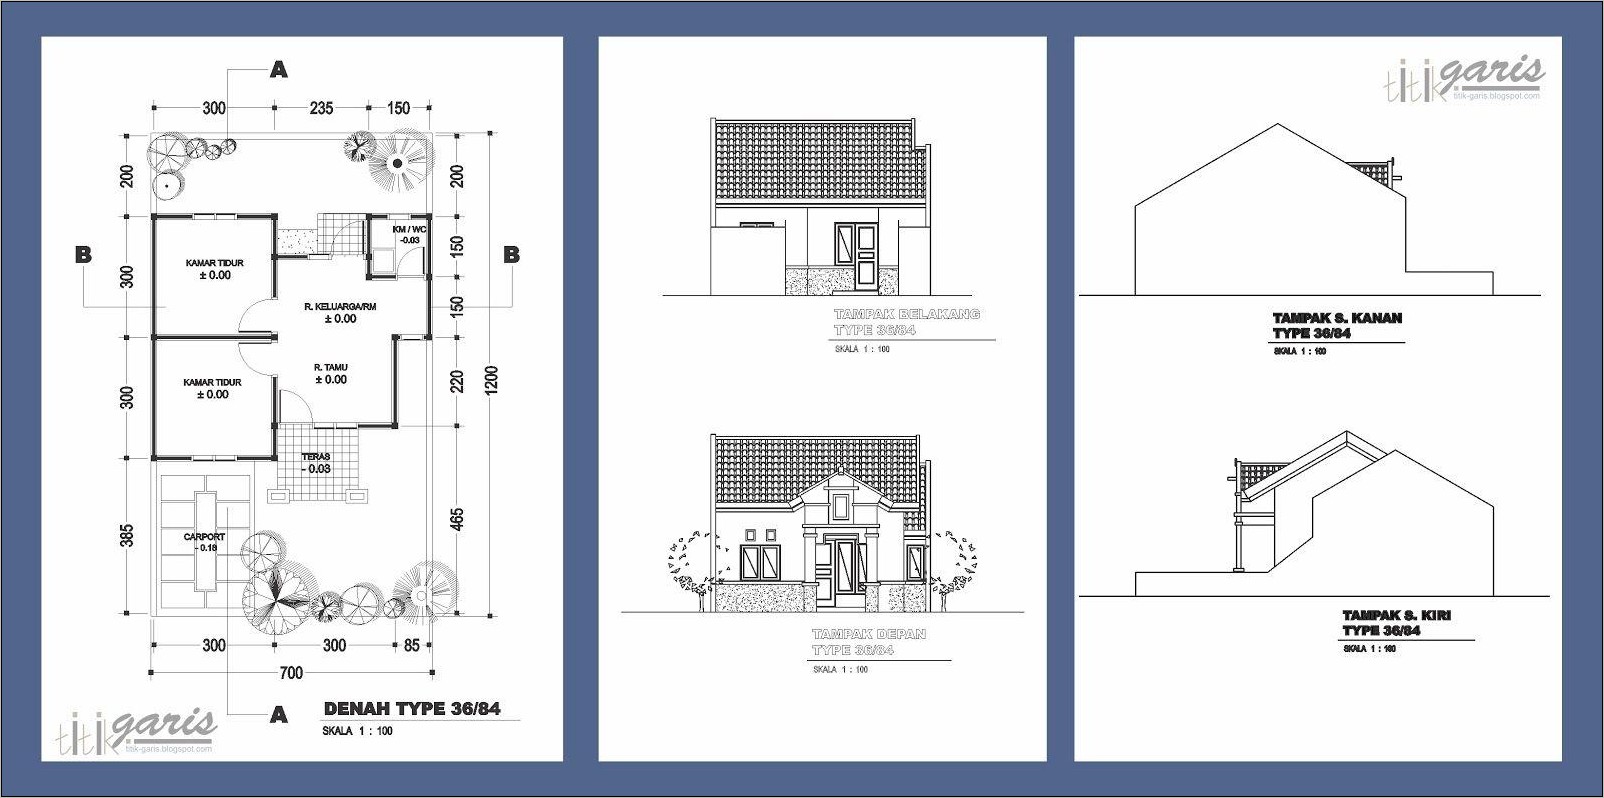 Denah Tampak Potongan Rumah 1 Lantai - Gambar Design Rumah - Denah Tampak Potongan Rumah 1 Lantai